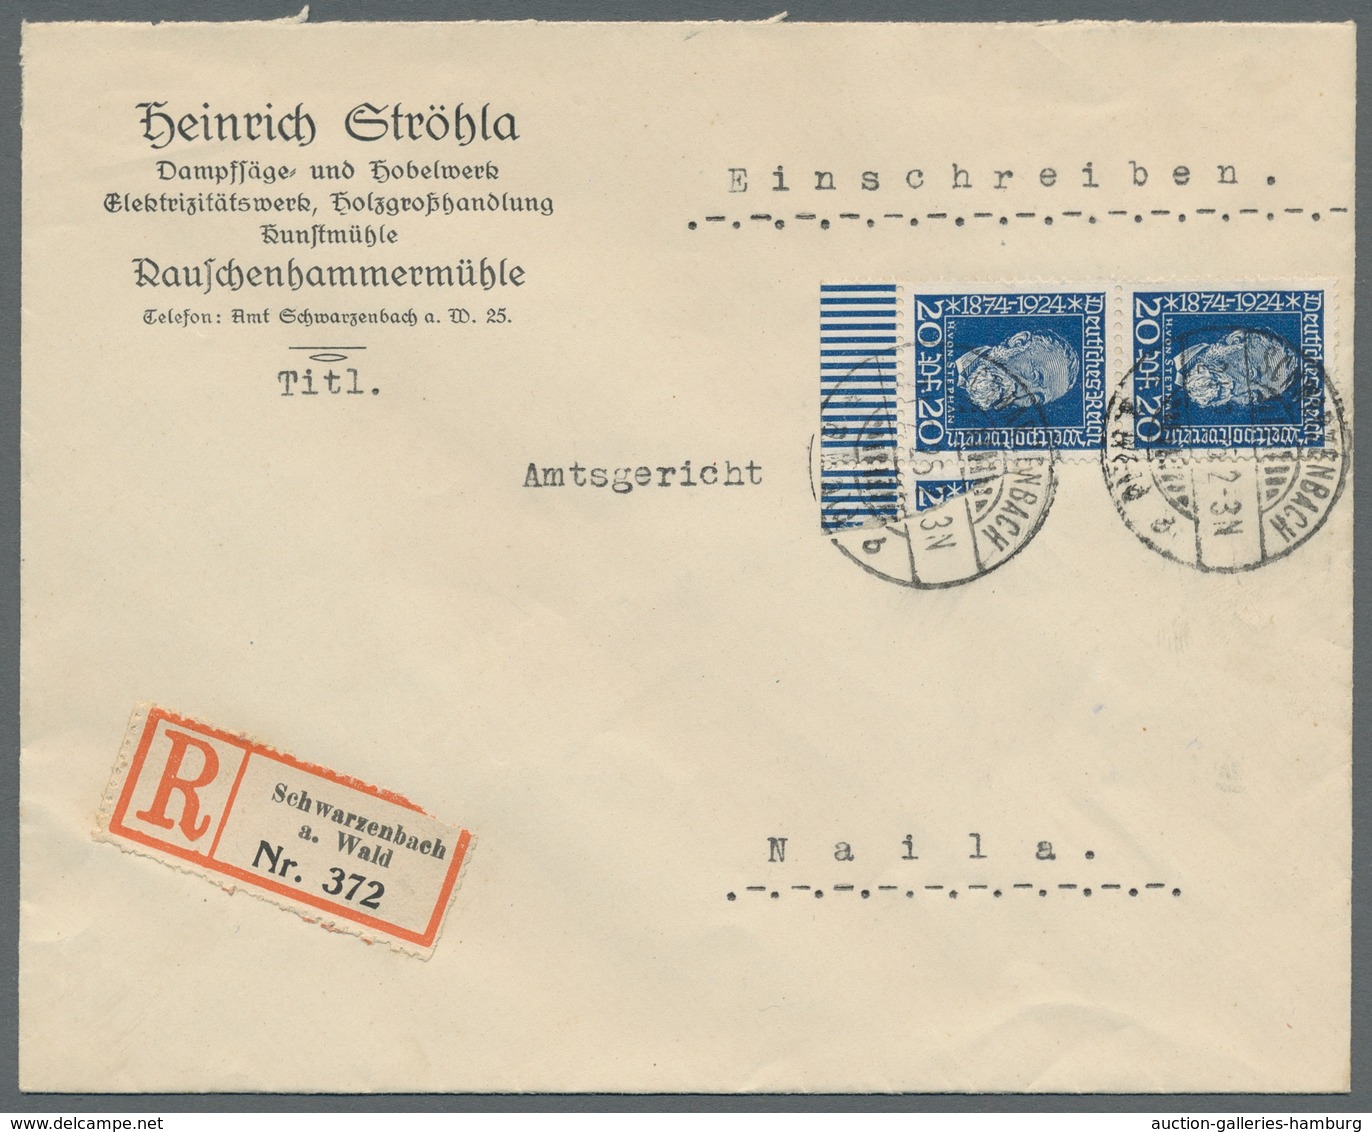 Deutsches Reich - Weimar: 1924, "Stephan/50 Jahre UPU", hübsche Zusammenstellung von fünf frankierte